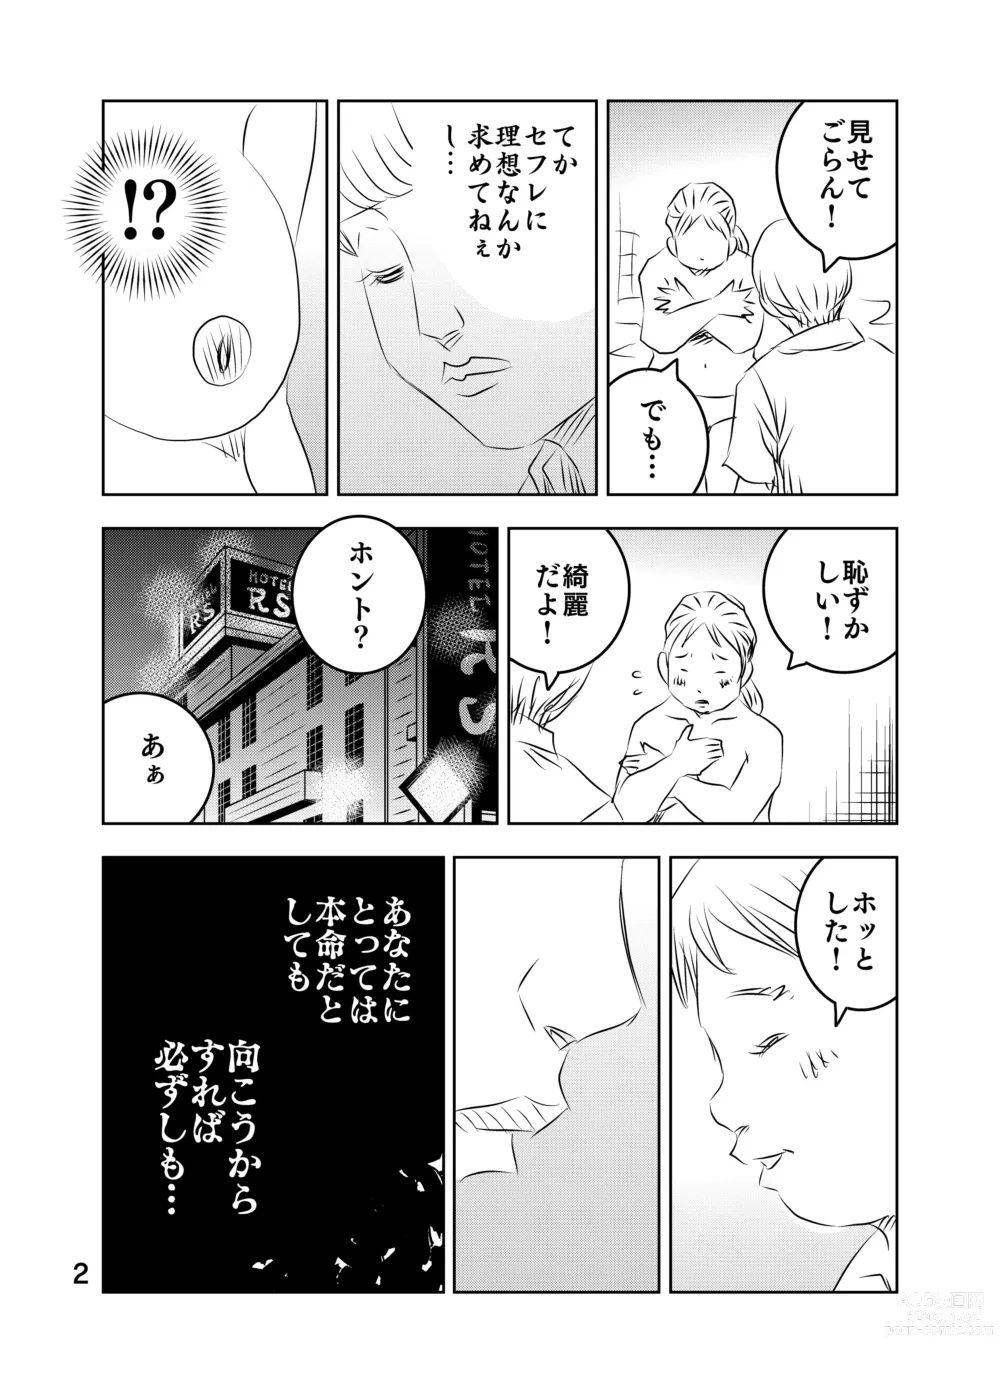 Page 68 of doujinshi Zurui Hito-tachi